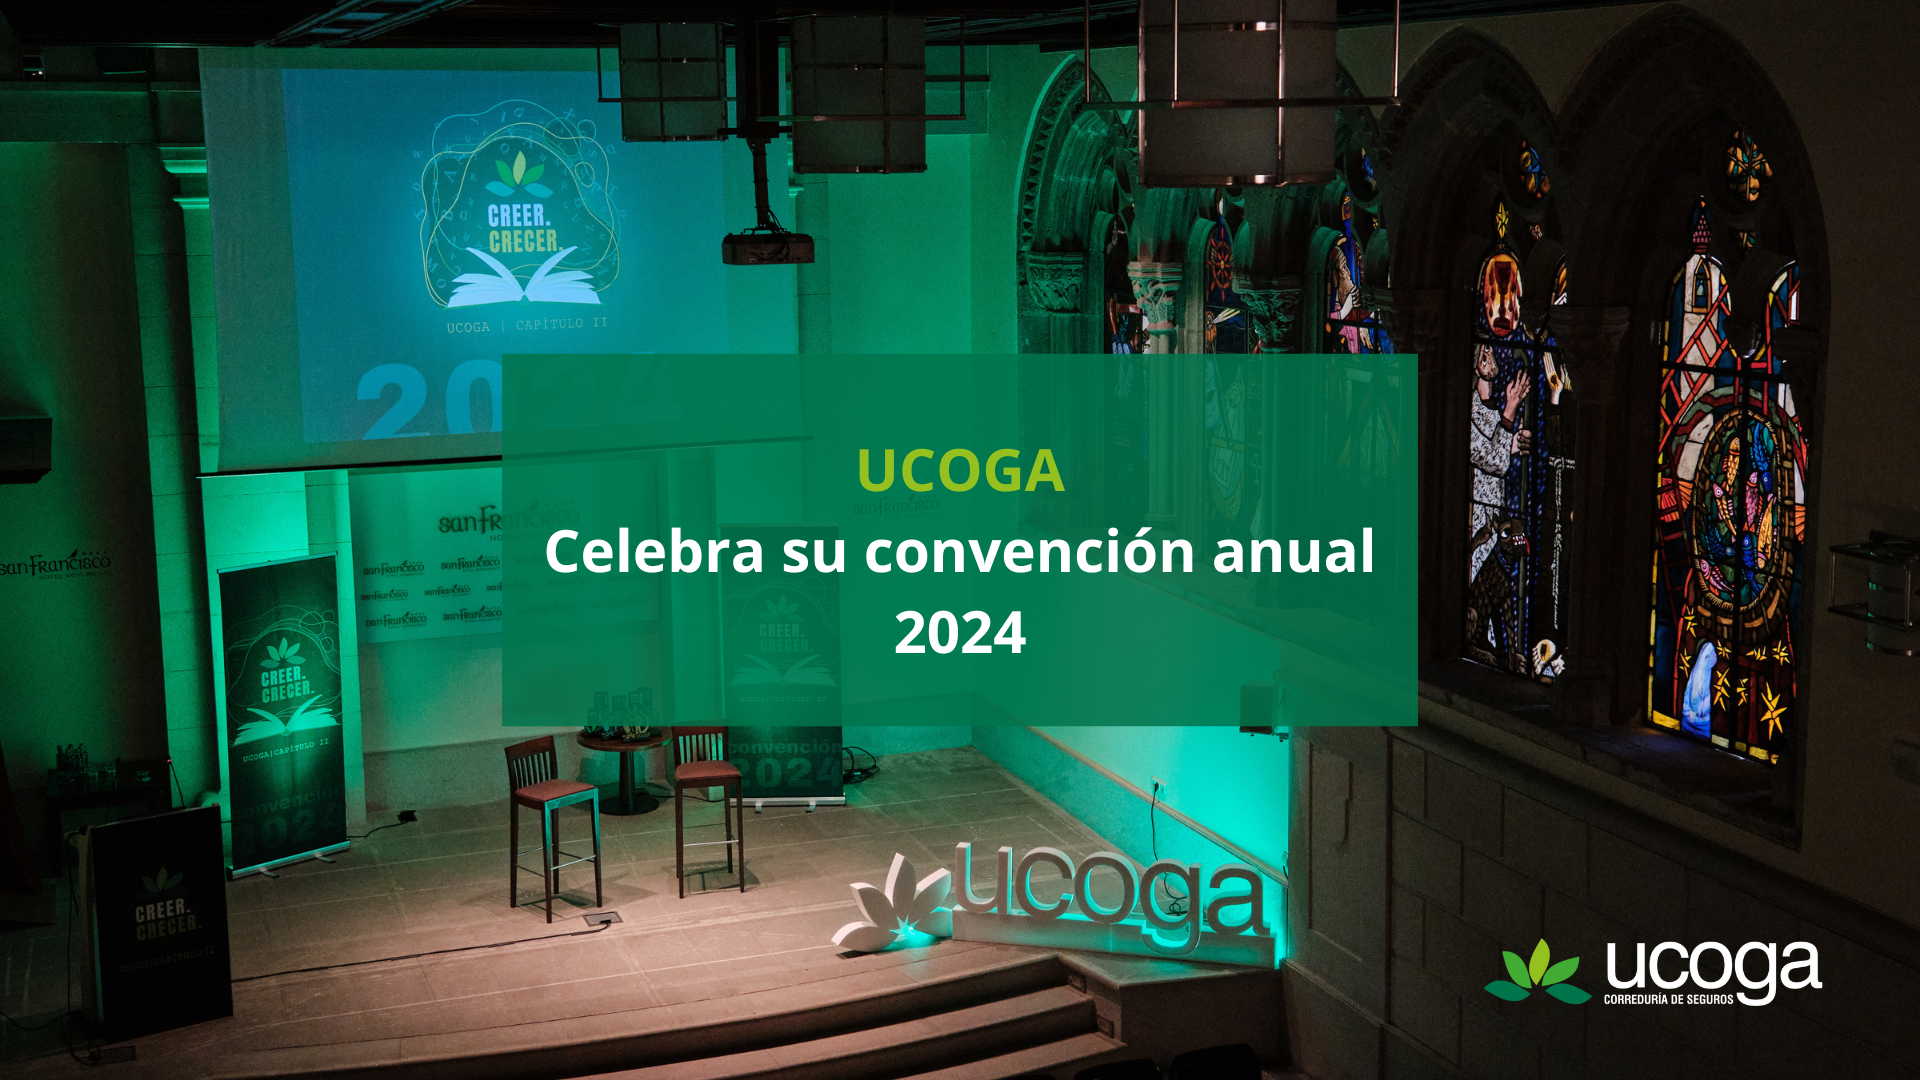 Ucoga Celebra su convención anual 2024